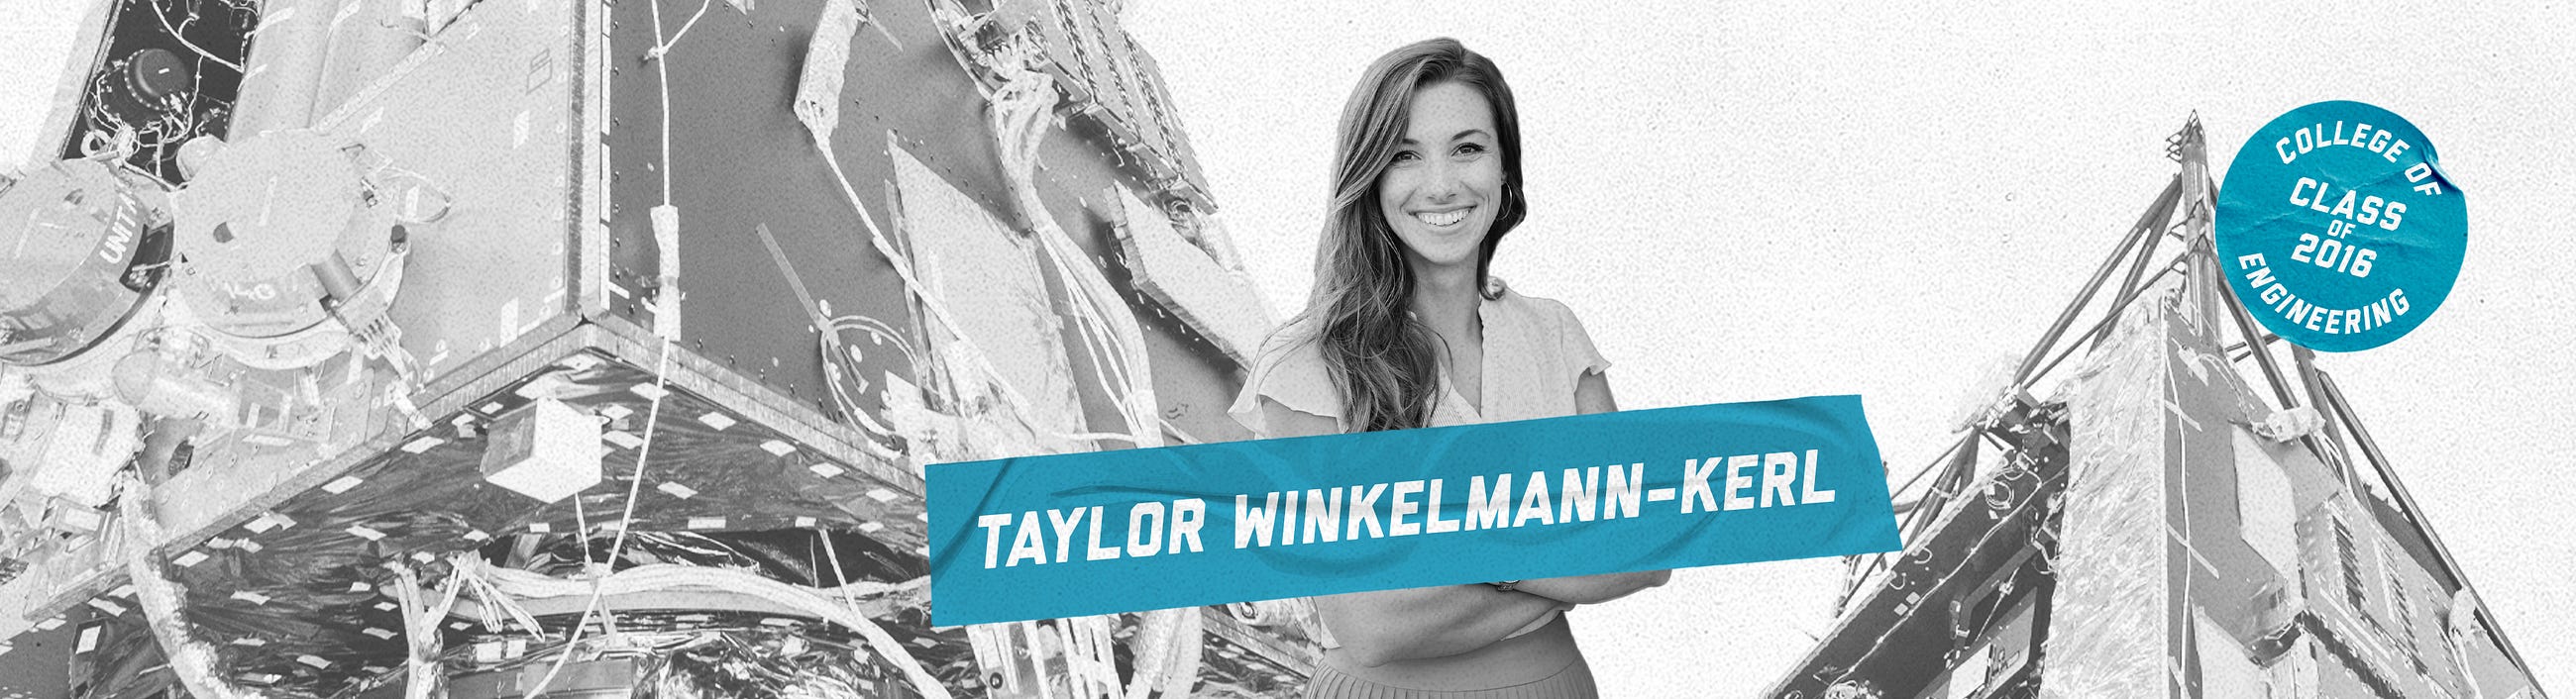 Ask an Alum: Taylor Winkelmann-Kerl